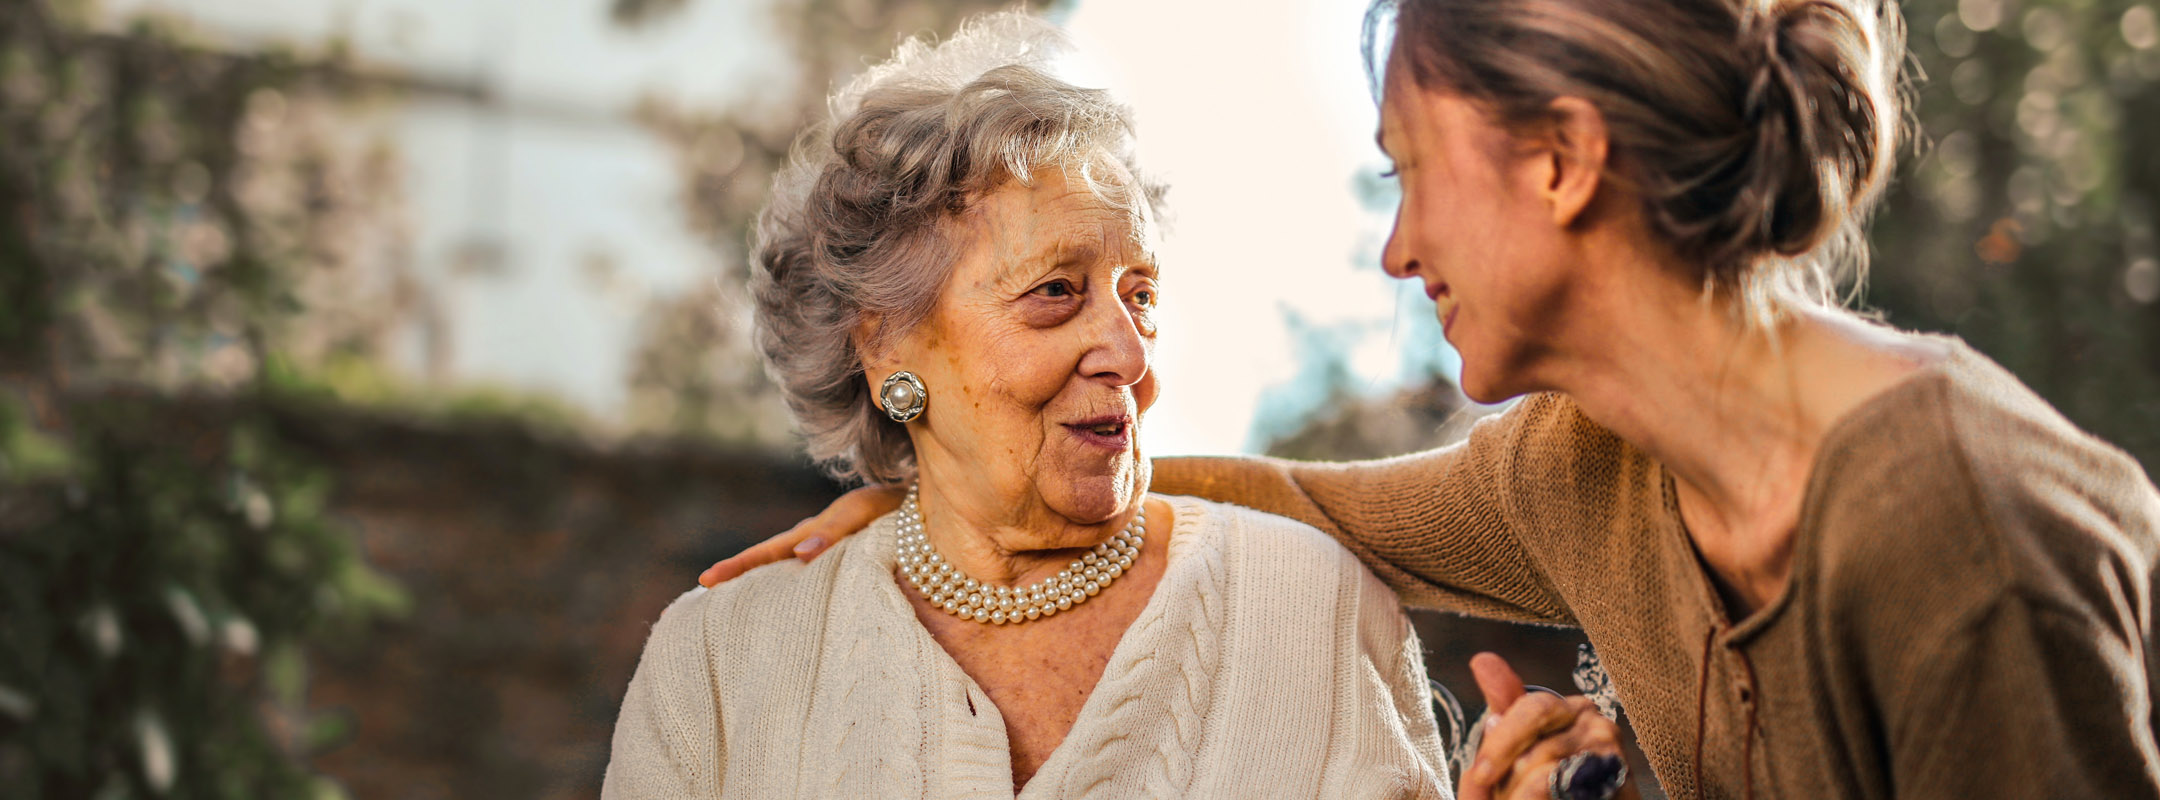 Eine junge Frau und eine alte Frau lachen sich an.